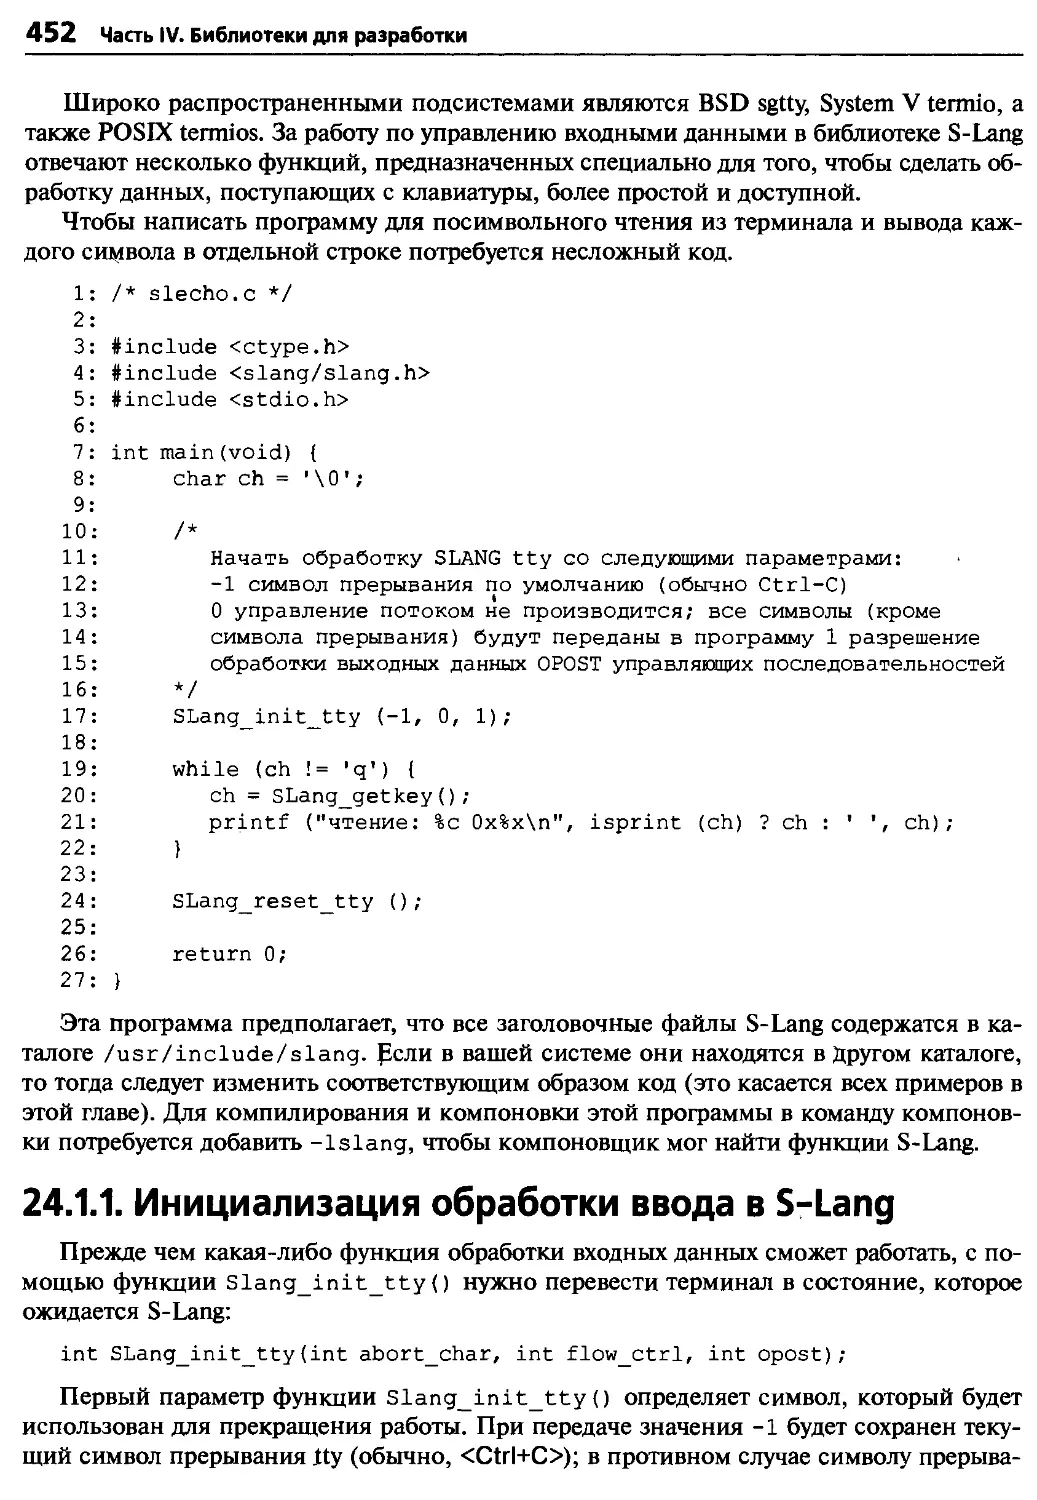 24.1.1. Инициализация обработки ввода в S-Lang